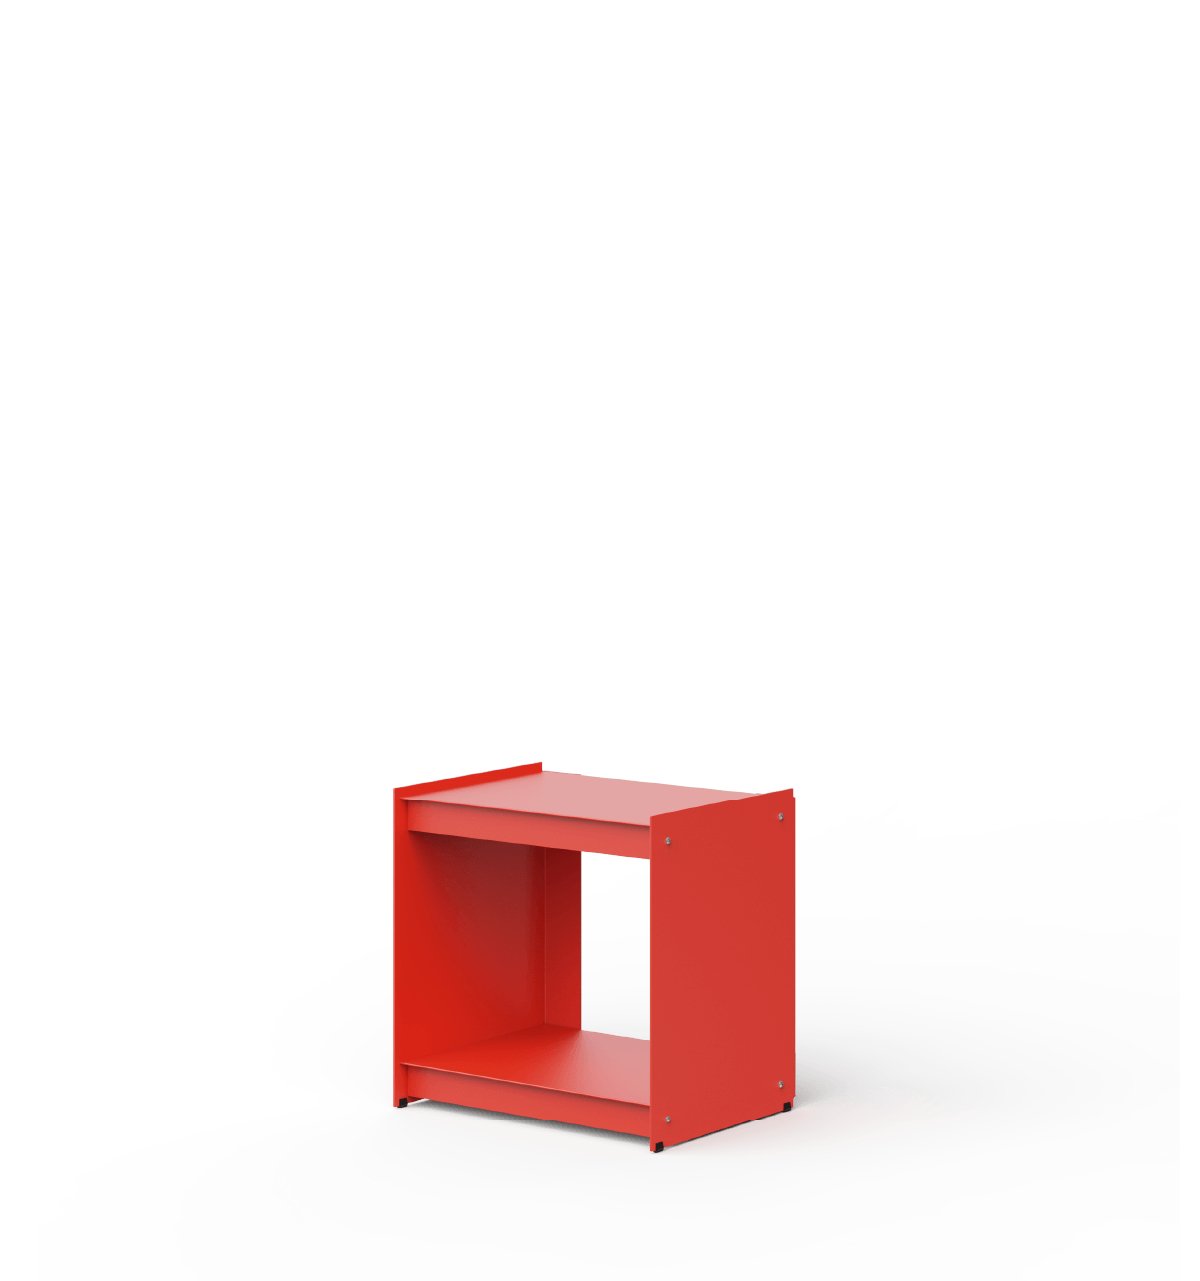 Plié - Side table shelves &amp; storage from UTIL